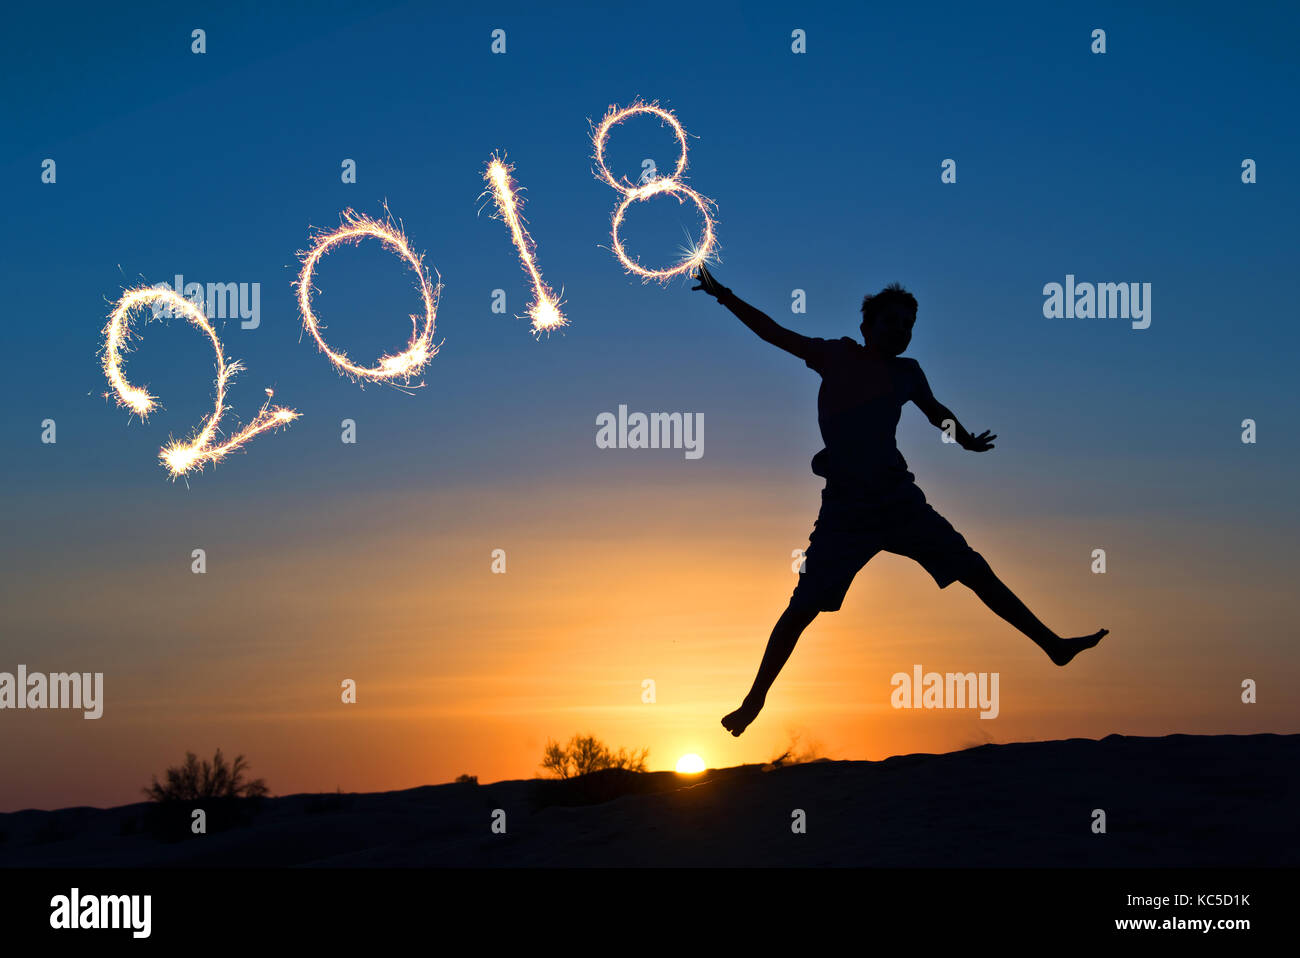 2018 écrit avec sparkles, silhouette d'un garçon sautant dans le soleil Banque D'Images